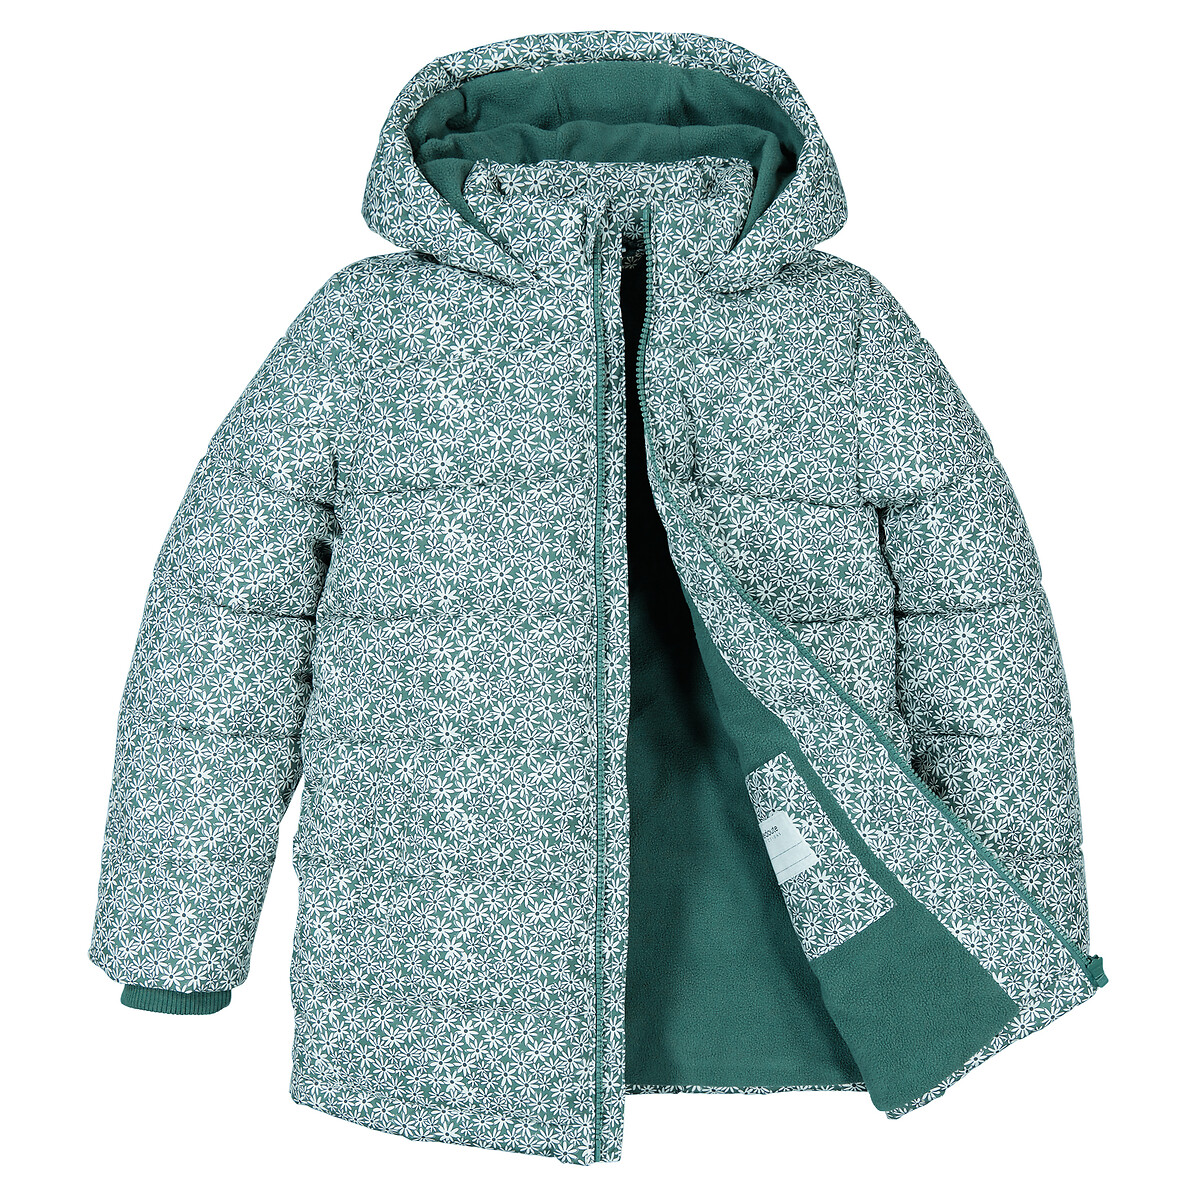 Куртка Стеганая утепленная с капюшоном цветочный принт 4 года - 102 см зеленый LaRedoute, размер 4 года - 102 см - фото 5